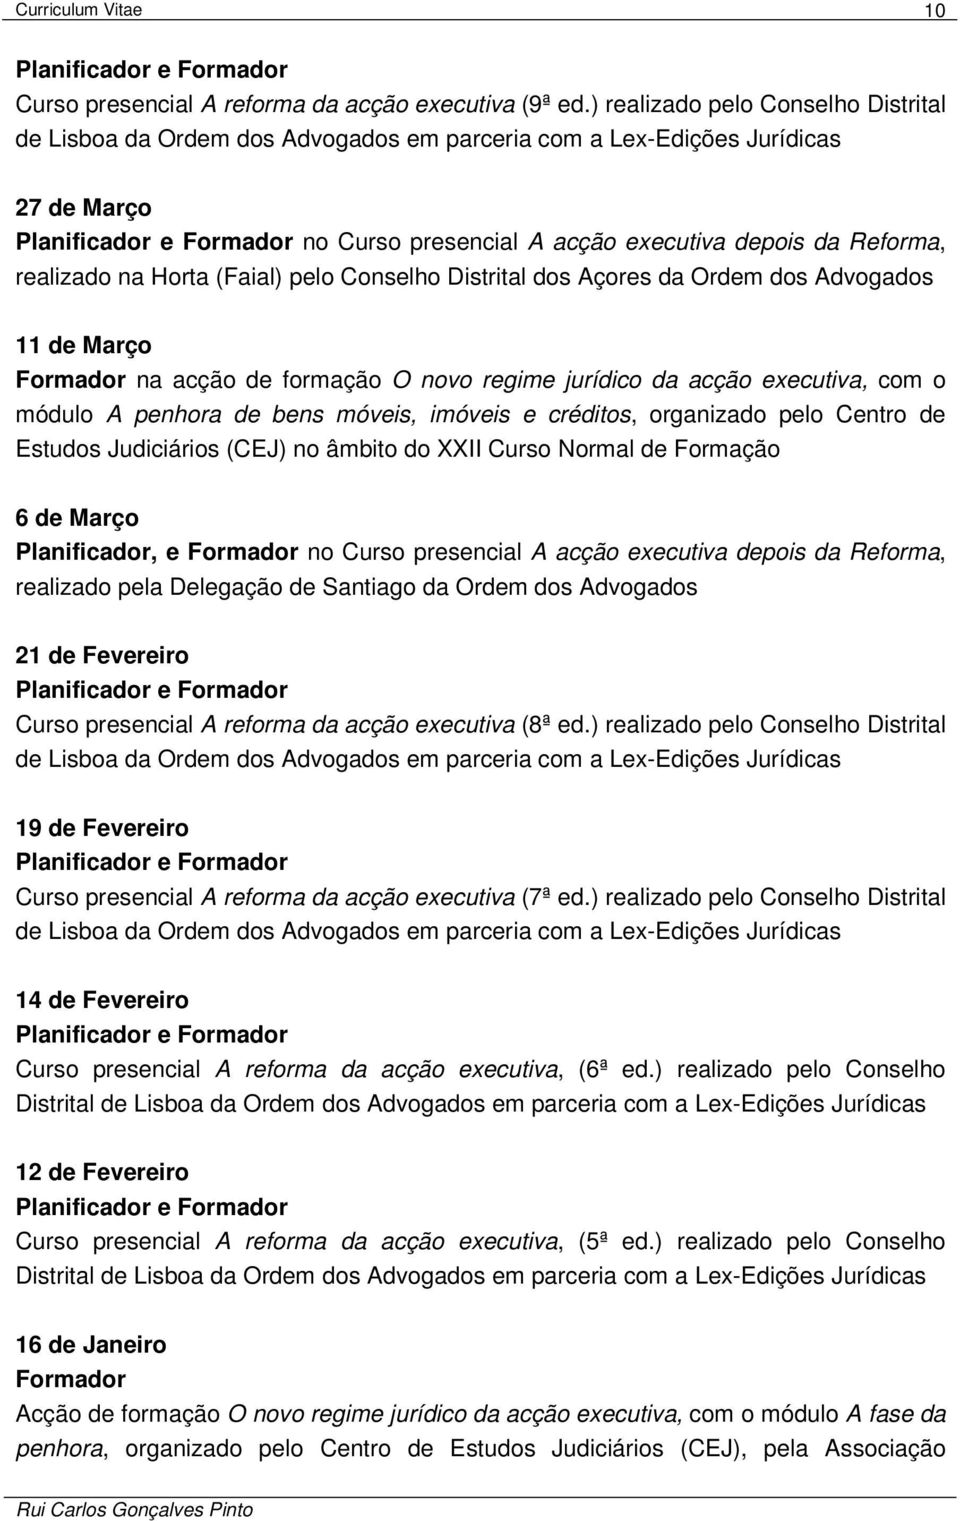 (Faial) pelo Conselho Distrital dos Açores da Ordem dos Advogados 11 de Março Formador na acção de formação O novo regime jurídico da acção executiva, com o módulo A penhora de bens móveis, imóveis e